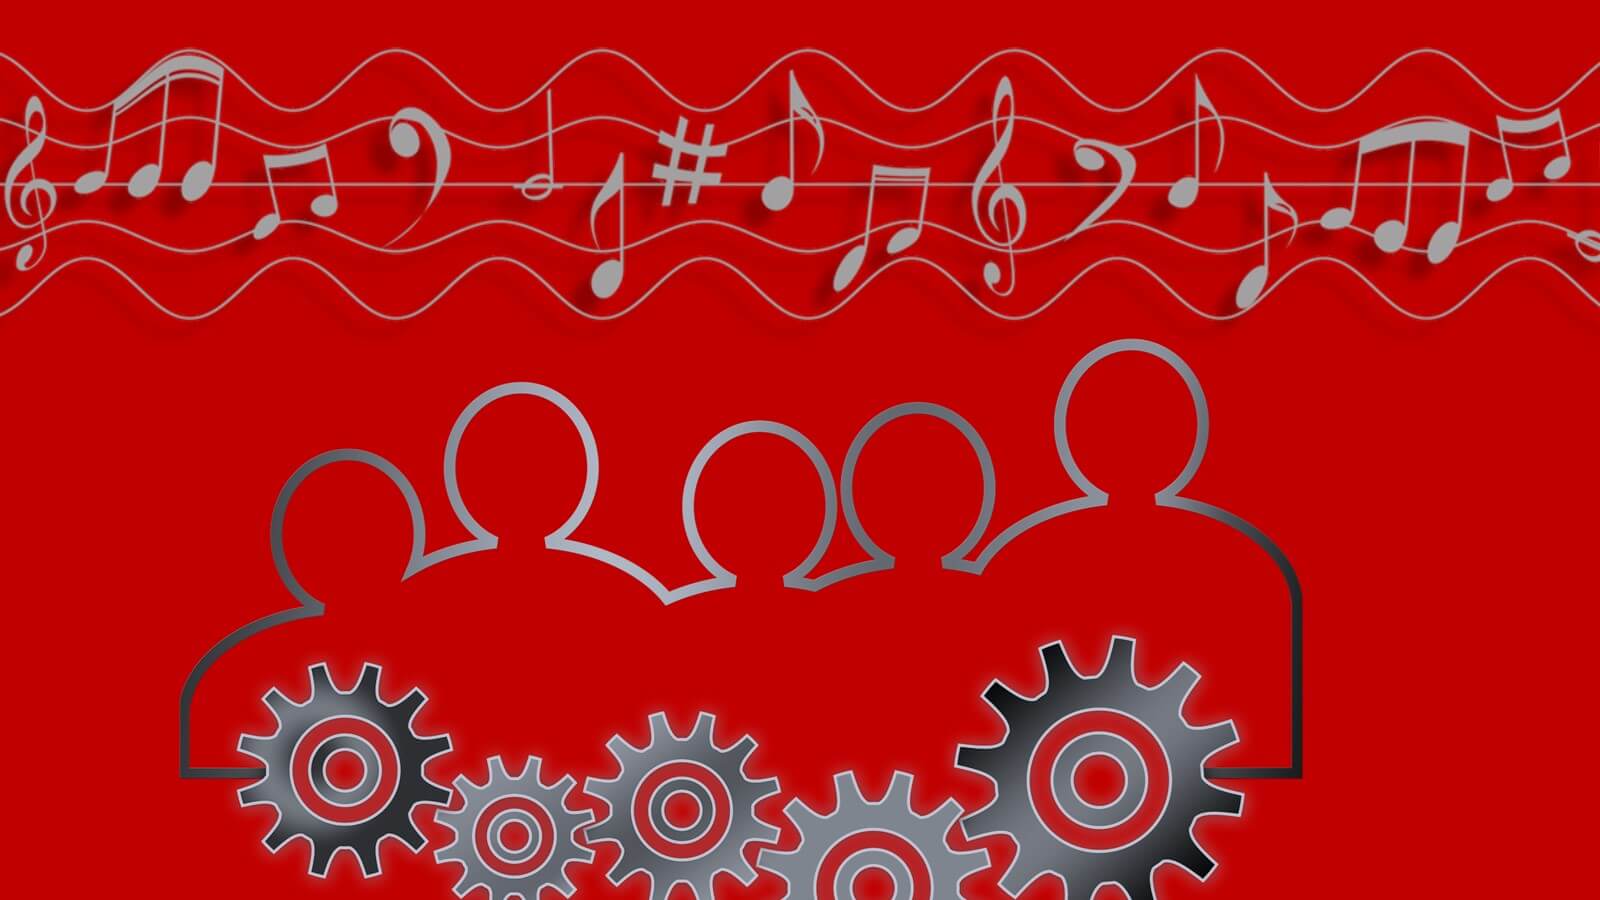 Musicoterapia organizacional e social